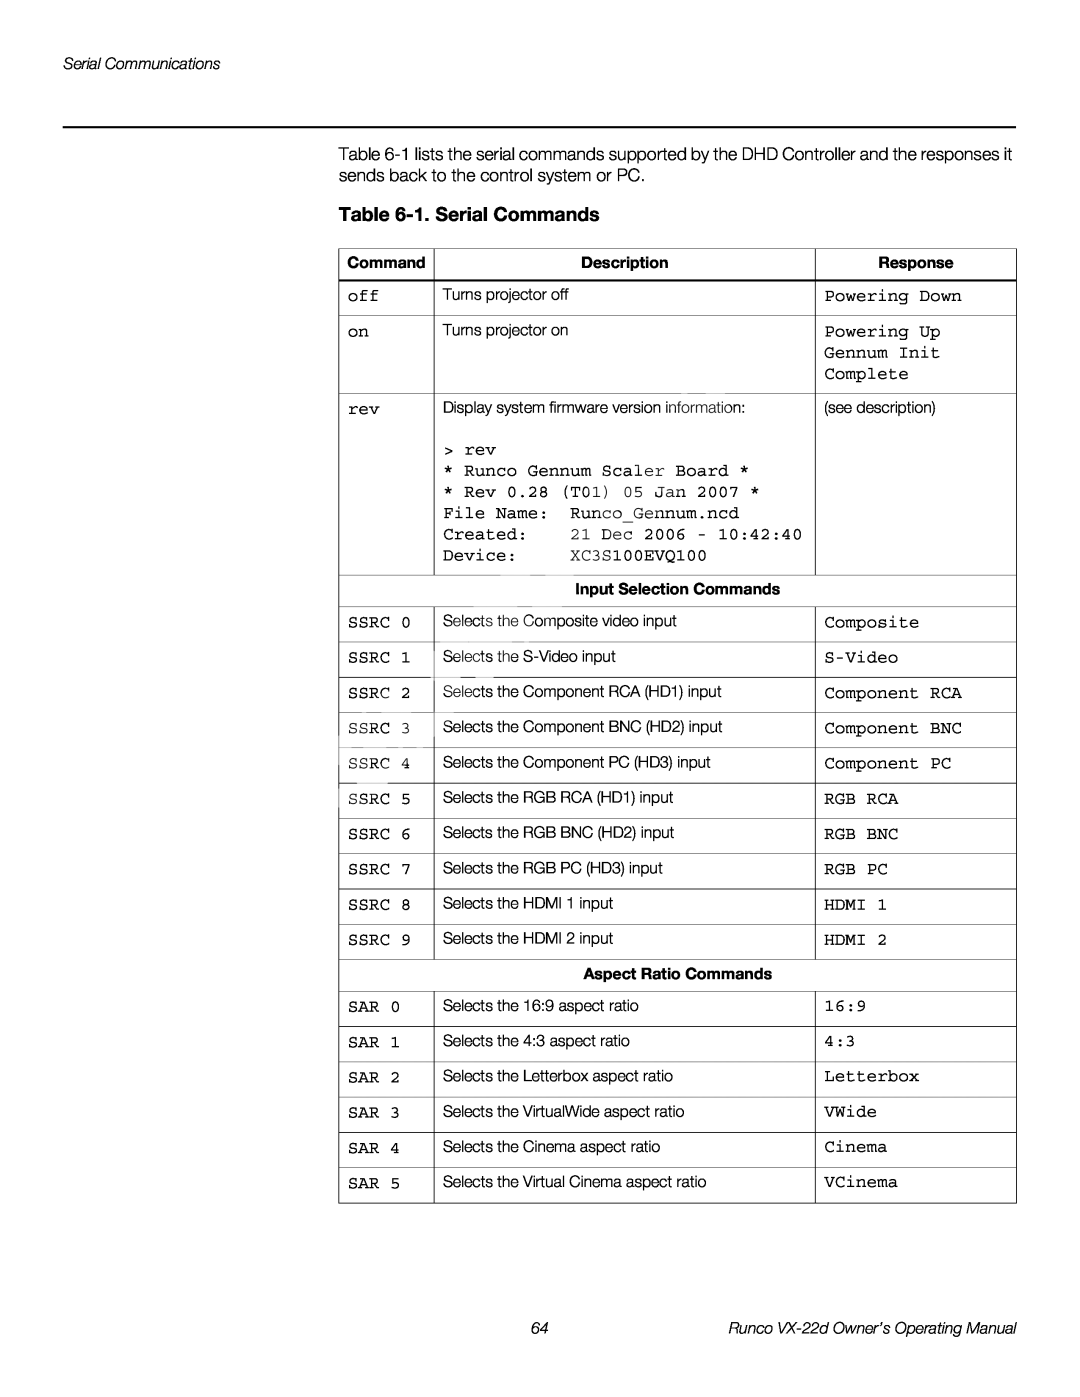 Runco VX-22D manual 1. Serial Commands 